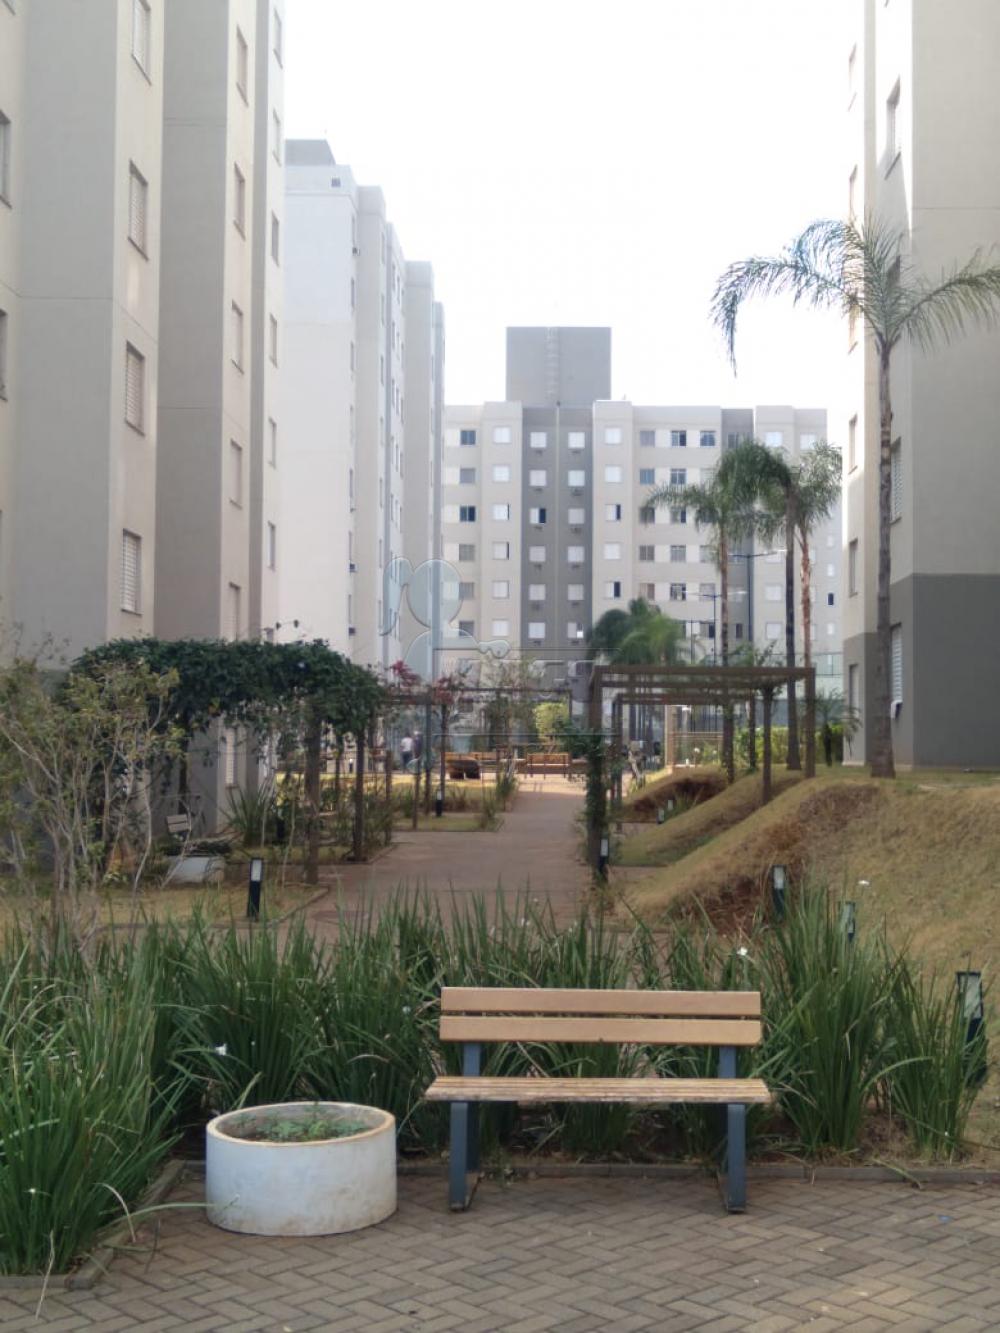 Comprar Apartamento / Padrão em Ribeirão Preto R$ 160.000,00 - Foto 7